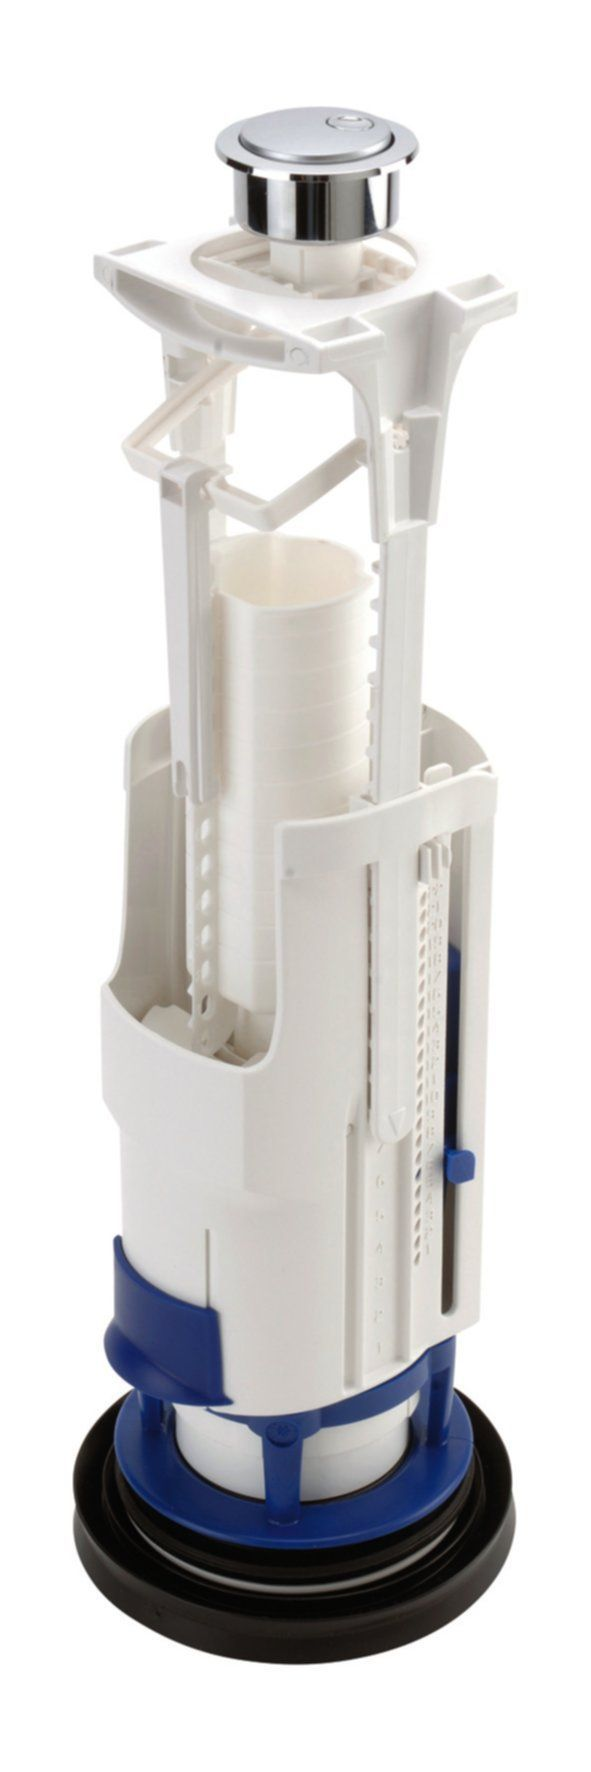 Mecanismo de inodoro de ahorro de agua de doble volumen con soporte, orificio de Ø 40 mm.